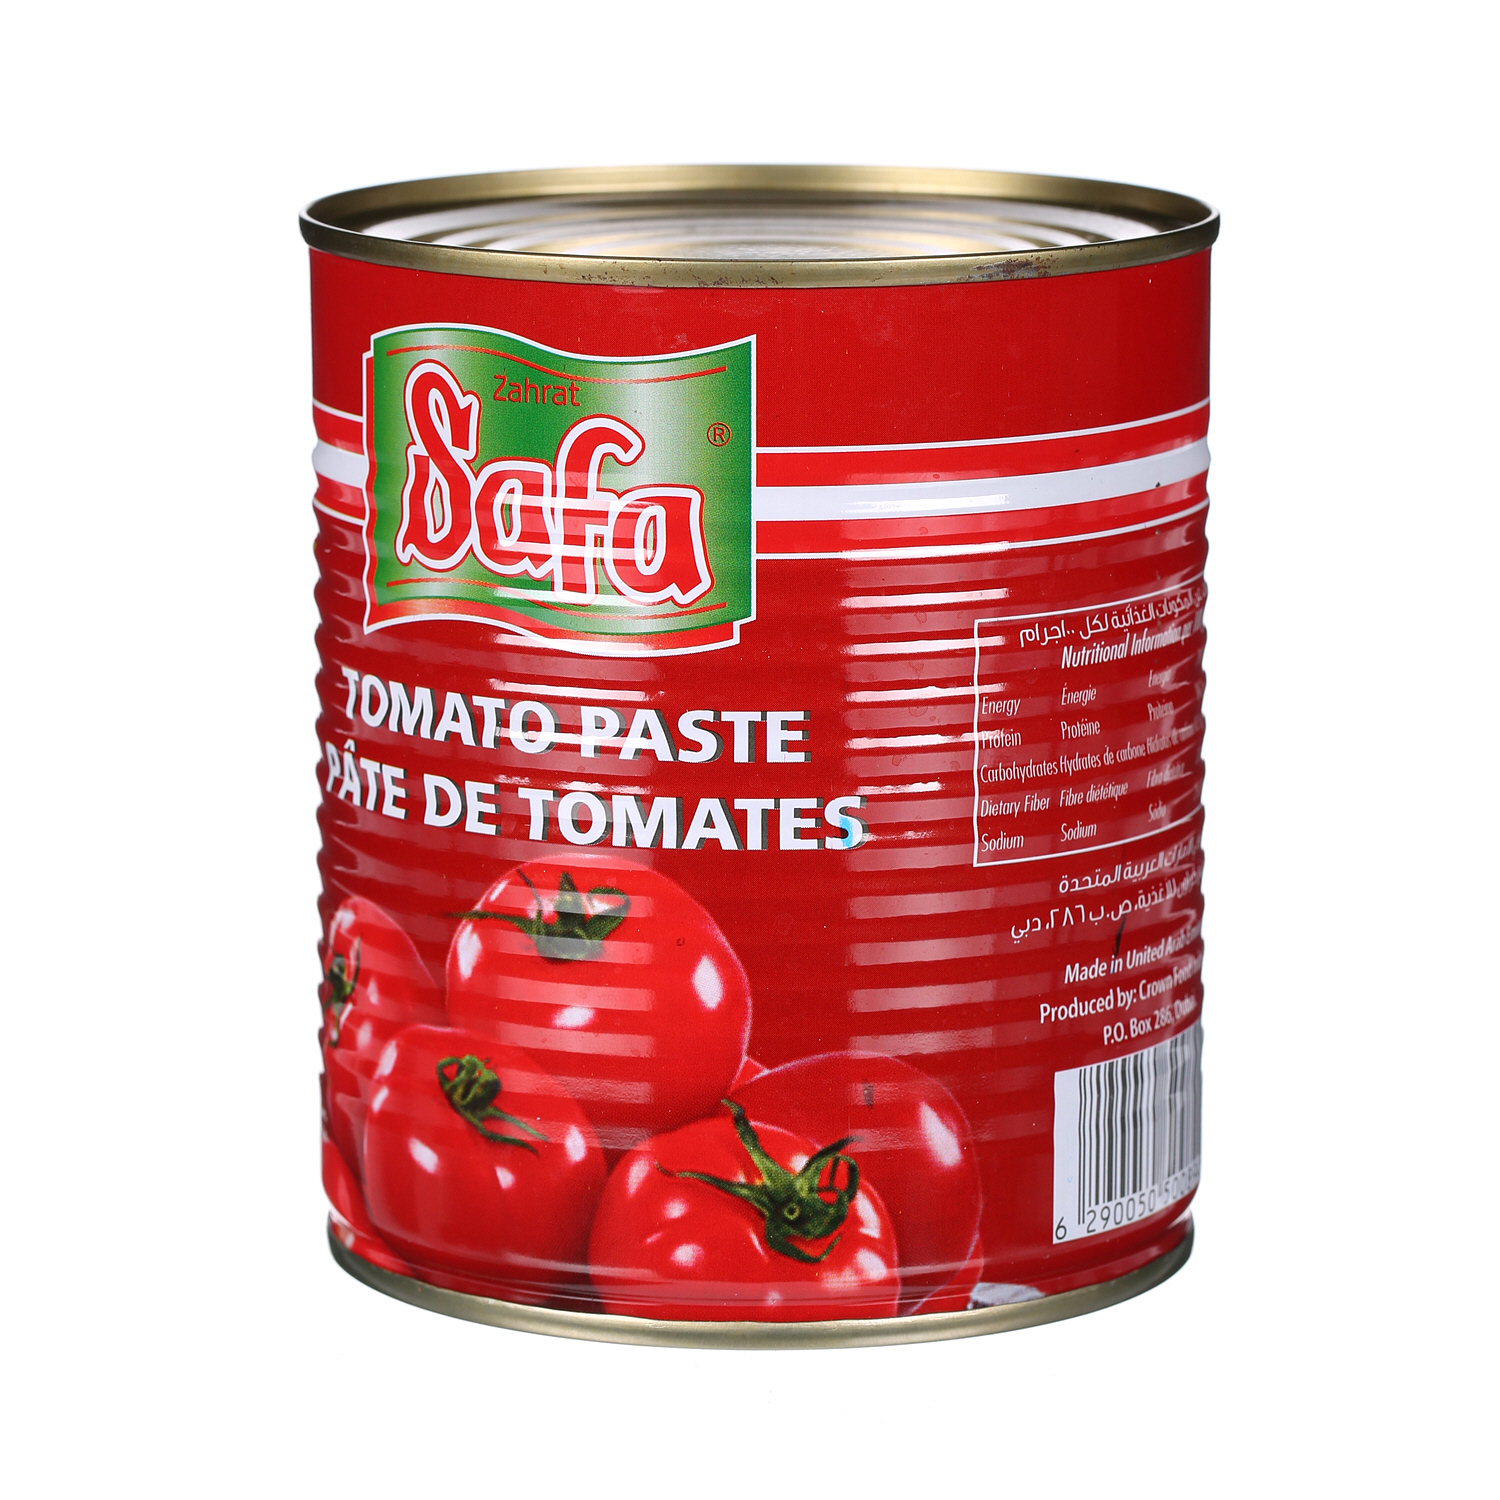 Safa Tomato Paste 850gm